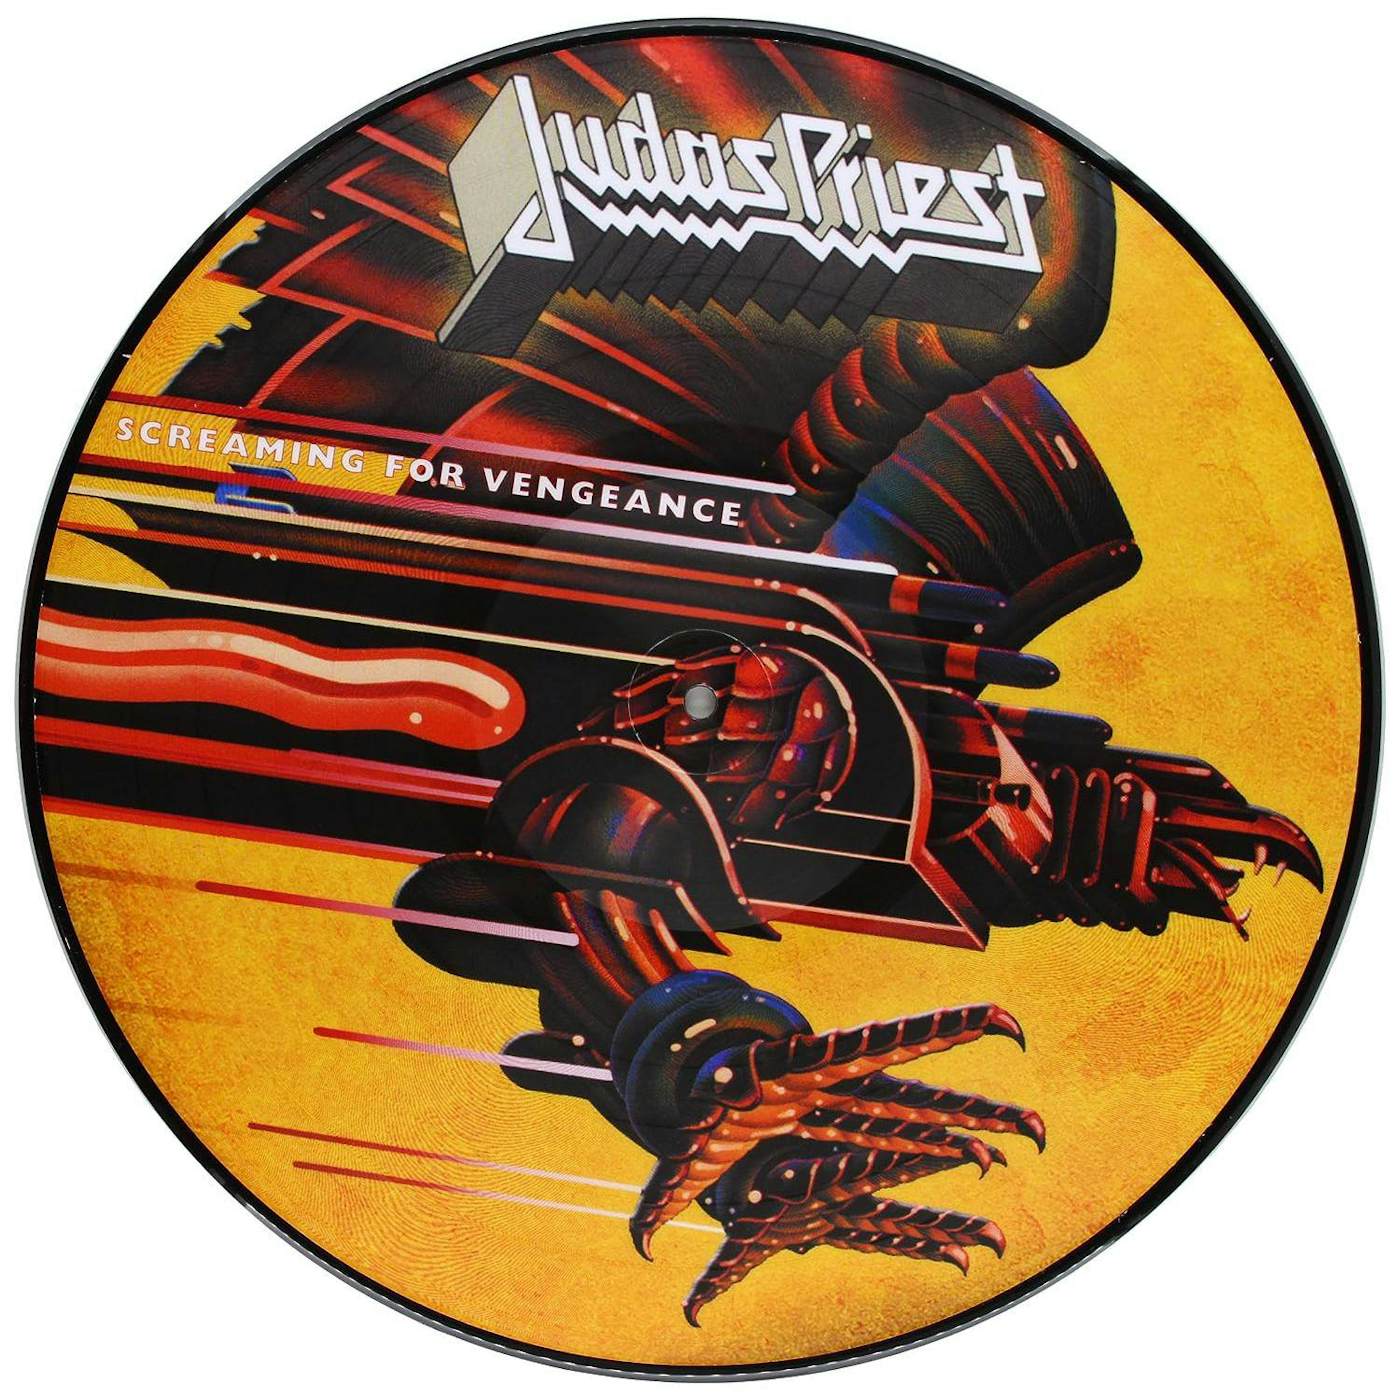 Judas Priest – Painkiller (Vinilo Simple)